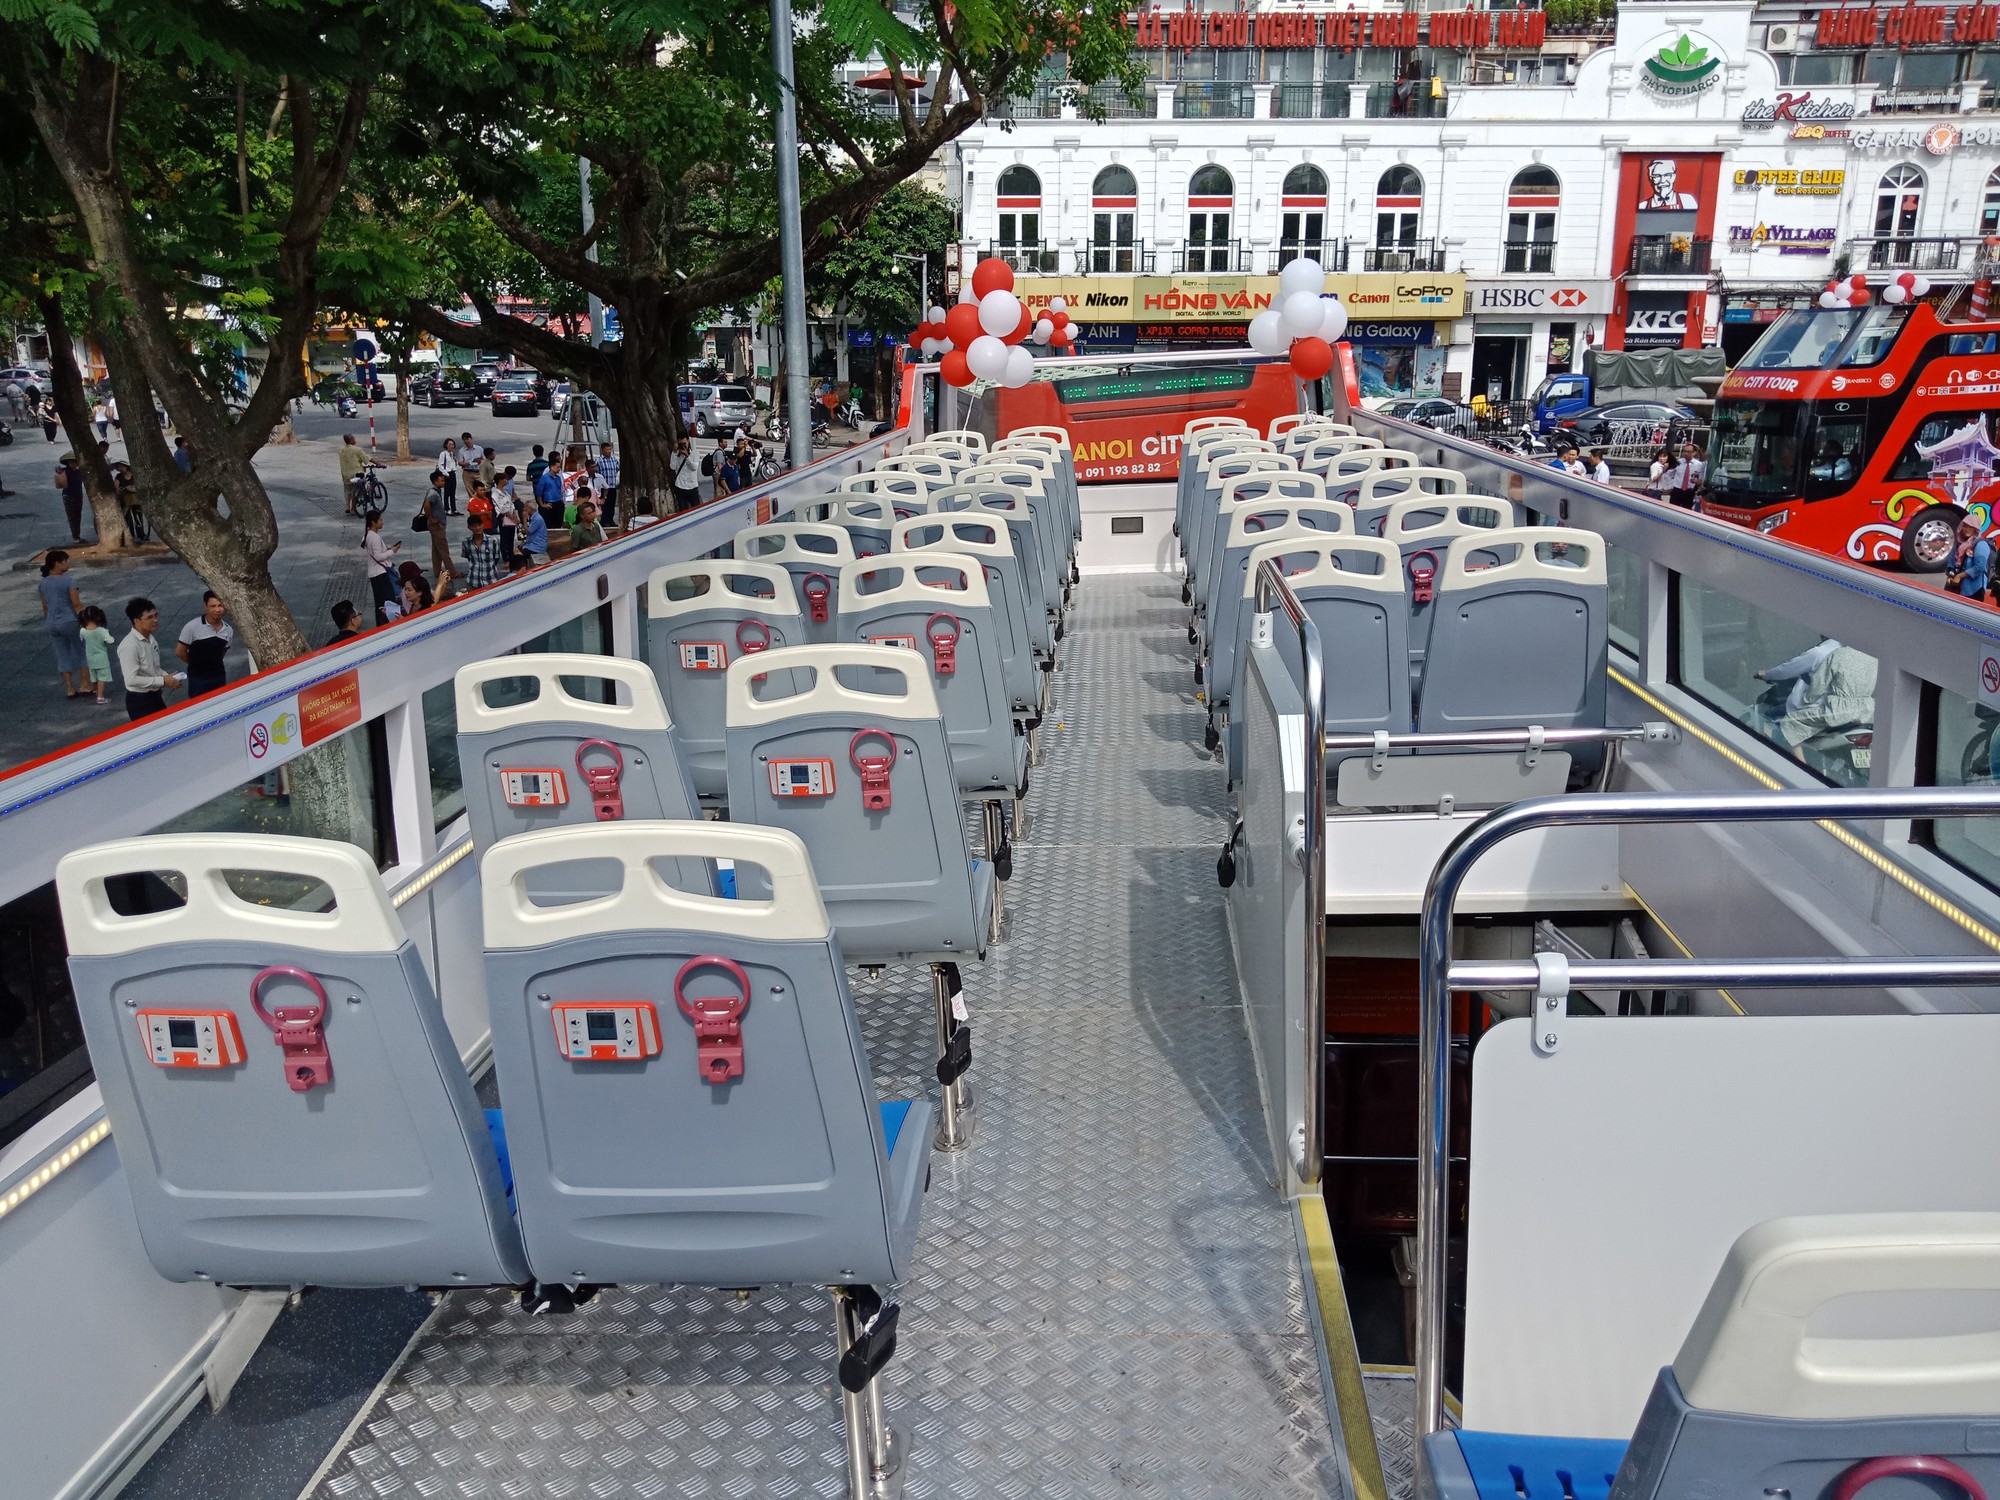 300.000-650.000 đồng để trải nghiệm, ngắm Hà Nội từ trên xe buýt 2 tầng - Ảnh 14.